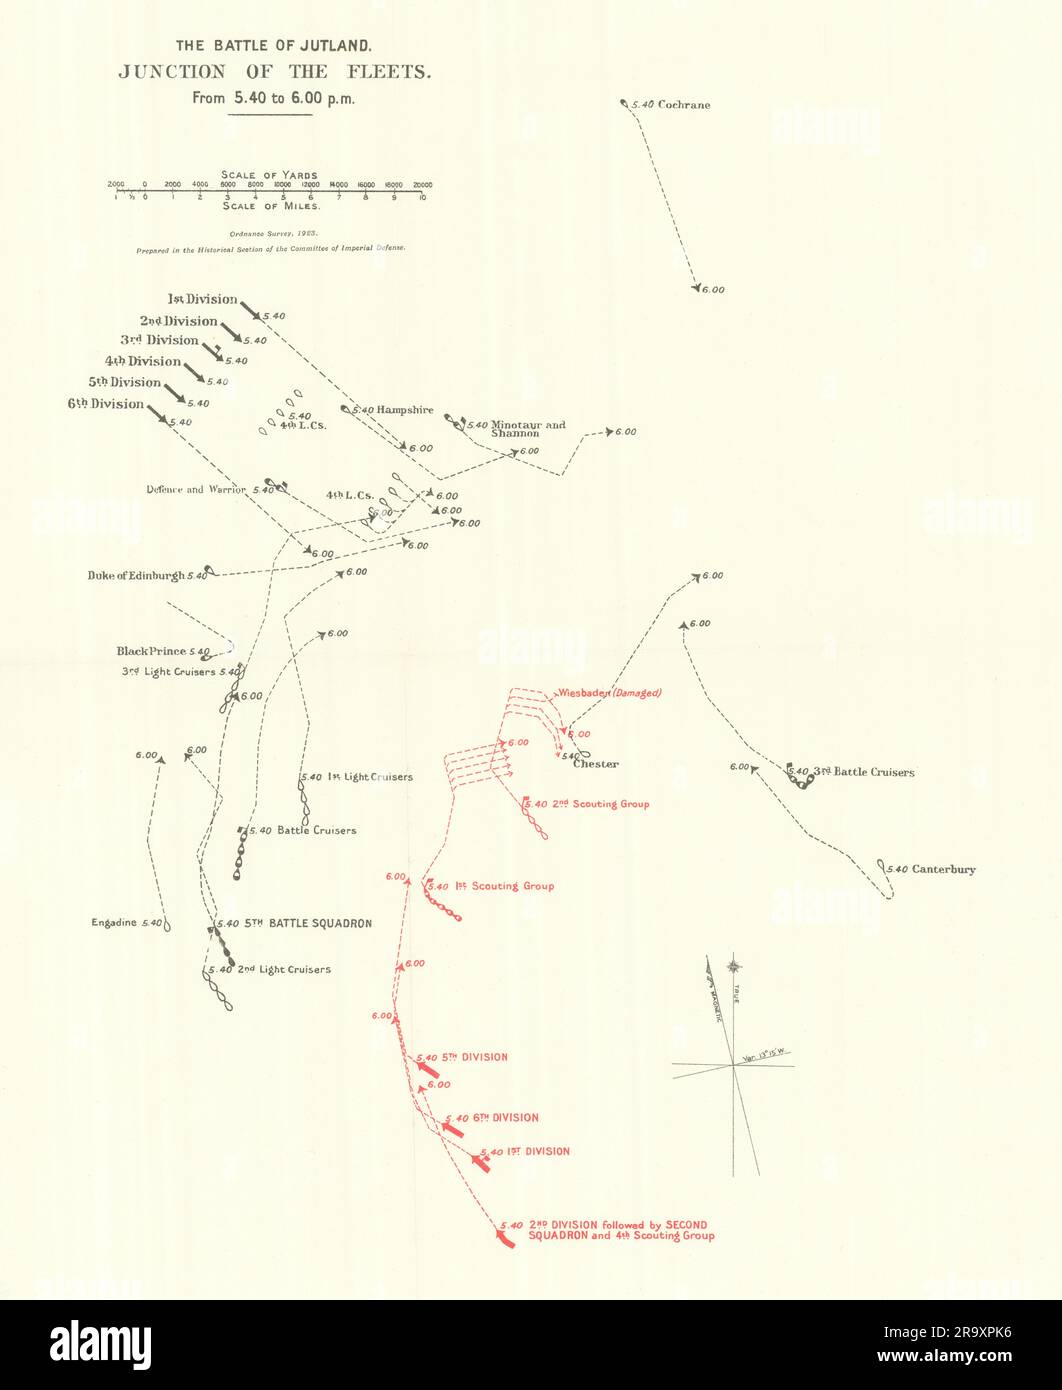 Battaglia dello Jutland. Giunzione delle flotte. Dalle 5,40 alle 6,00 del 31 maggio 1916. WW1. mappa 1923 Foto Stock